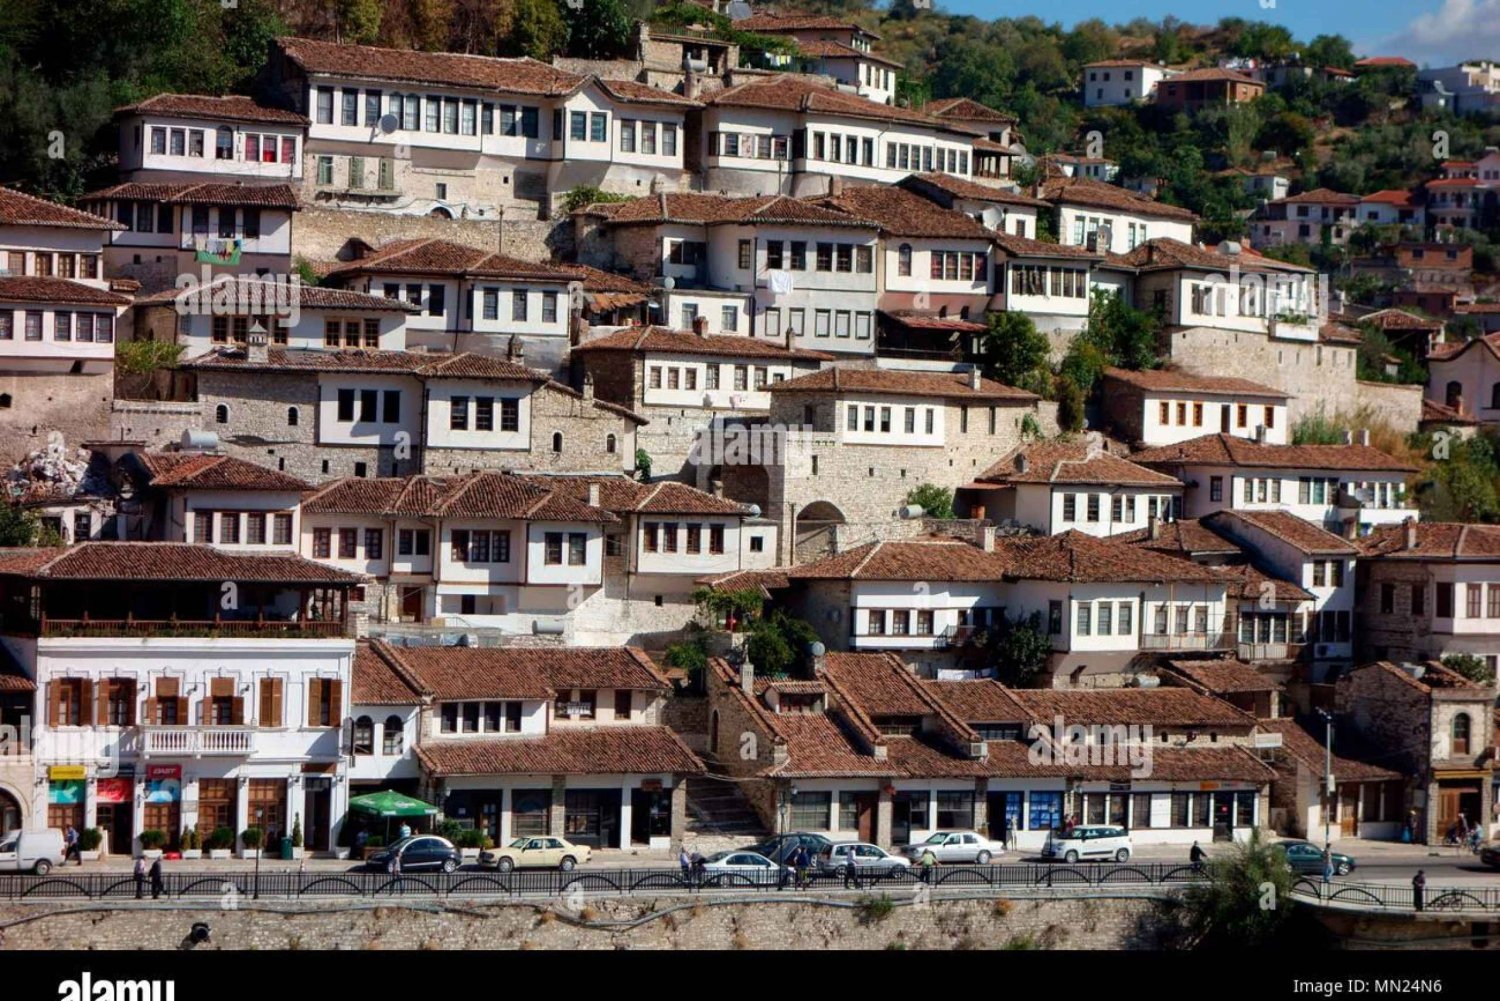 Entdecke Belshi und Berat: UNESCO City of Heritage Wonders